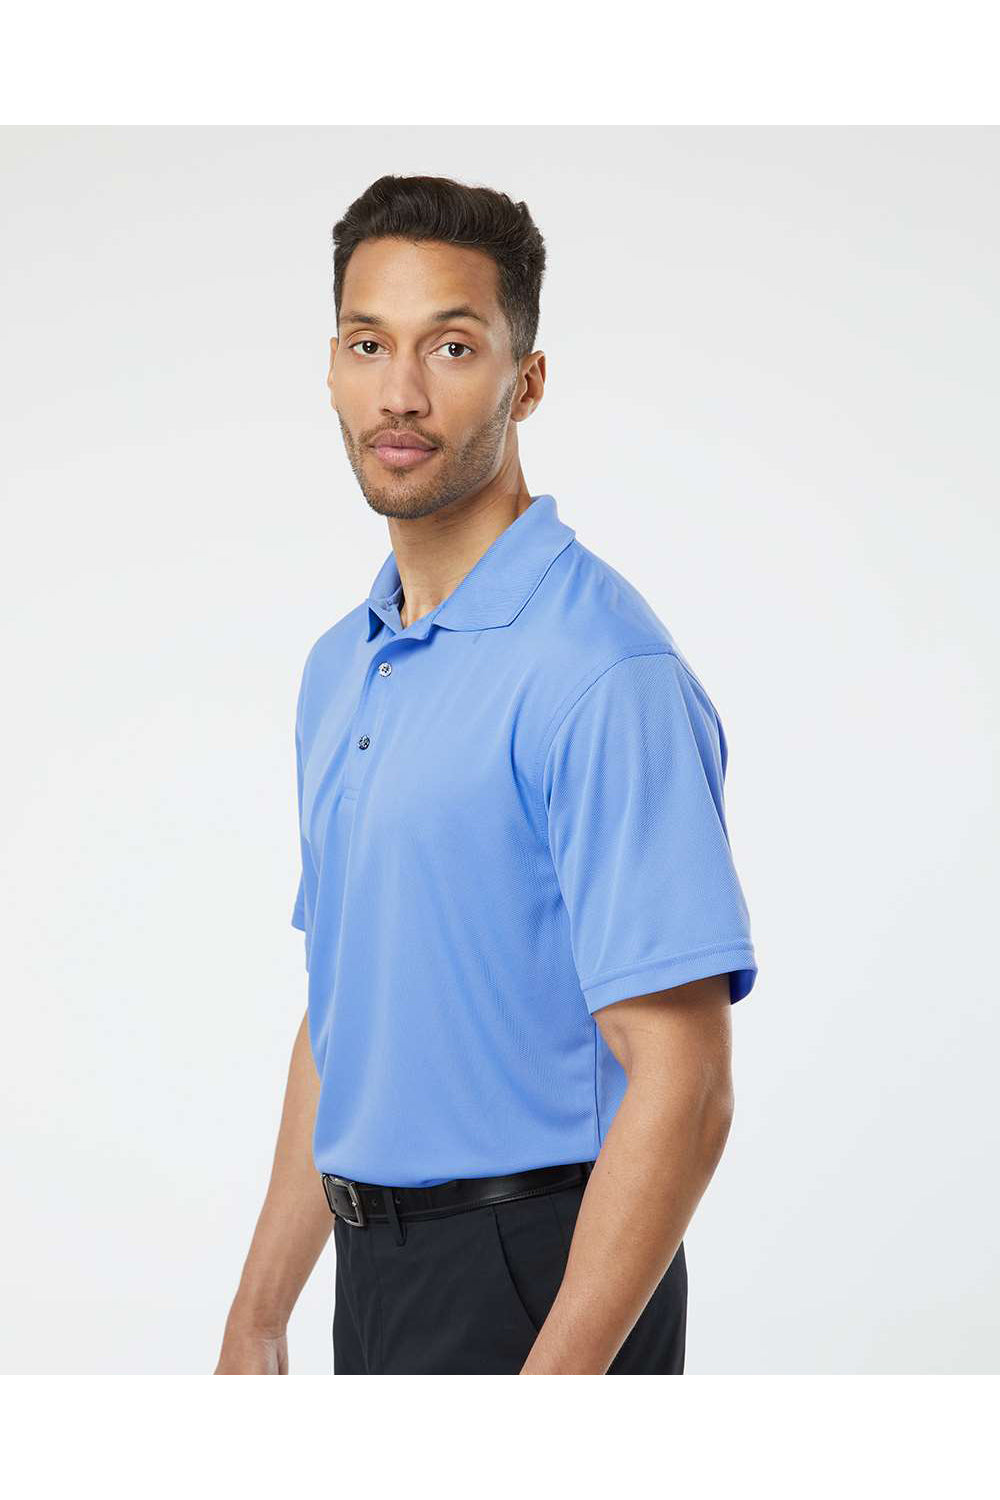 Paragon 100 Mens Saratoga Performance Mini Mesh Short Sleeve Polo Shirt Bimini Blue Model Side